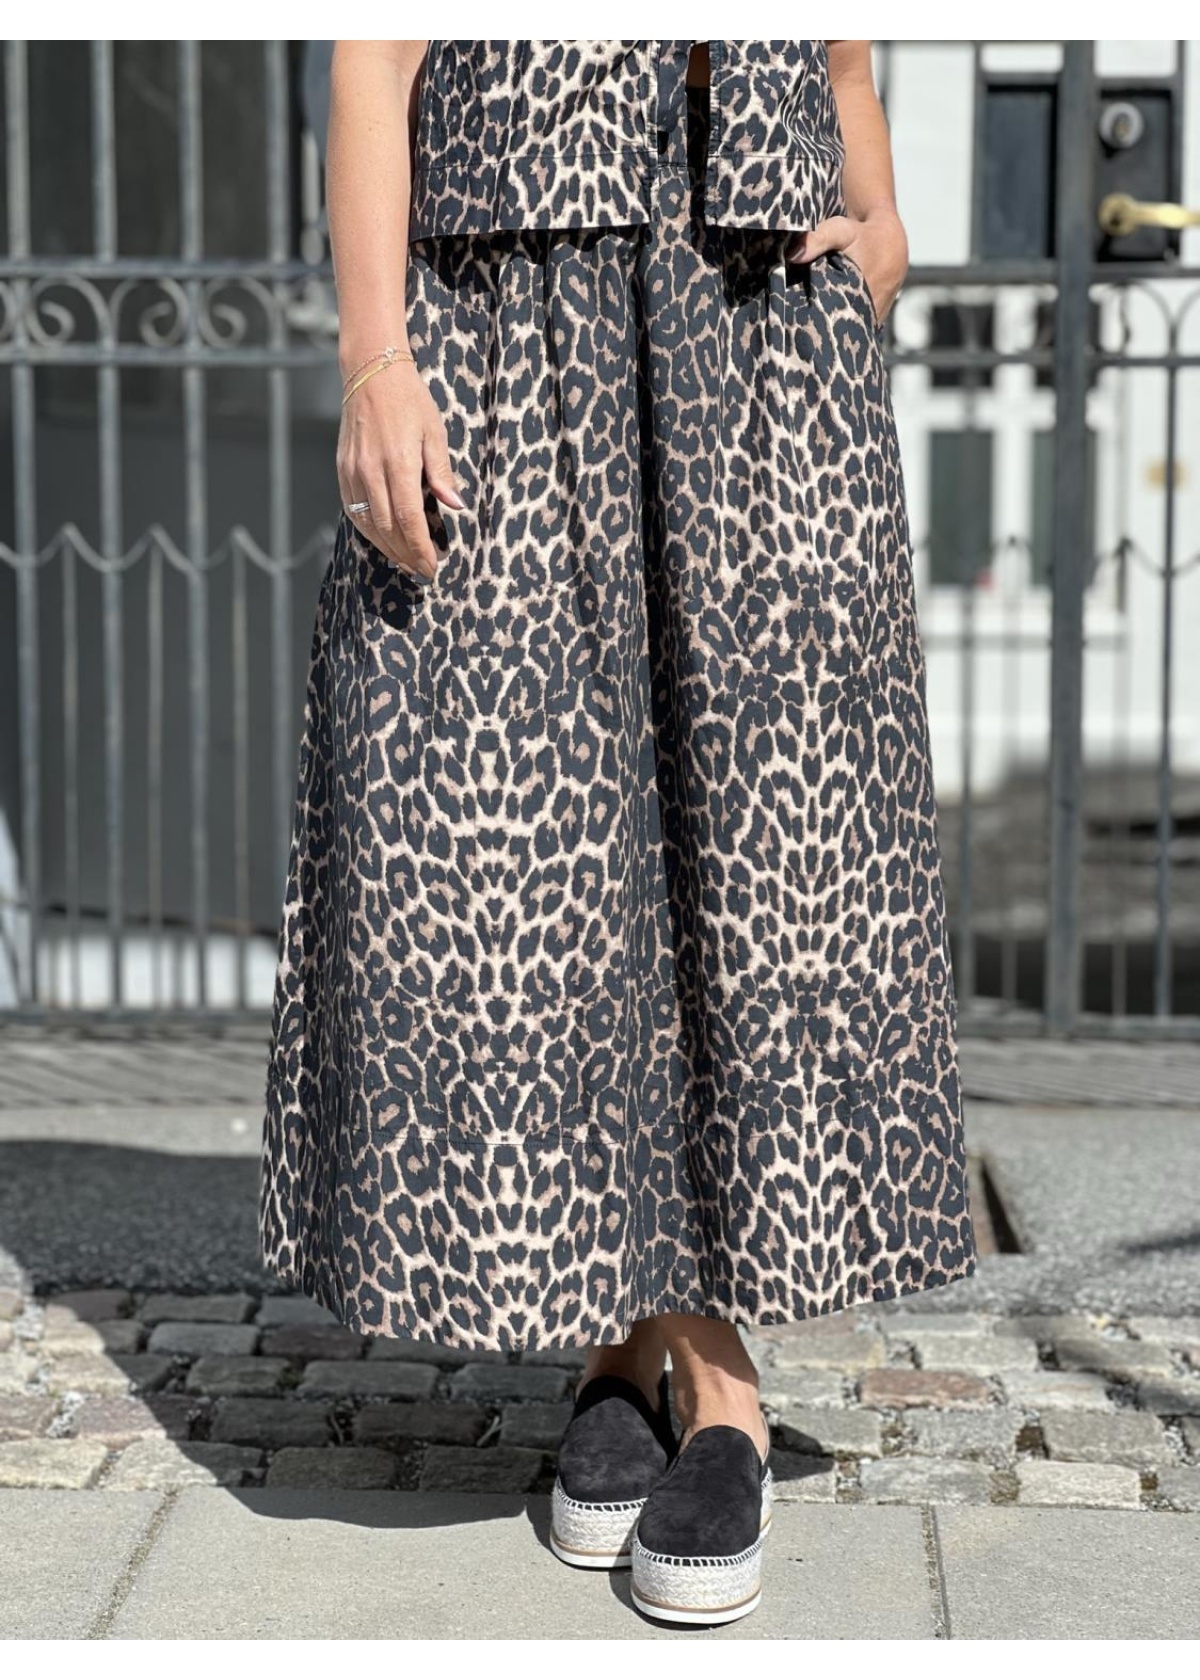 Neo Noir Yara poplin long skirt leopard